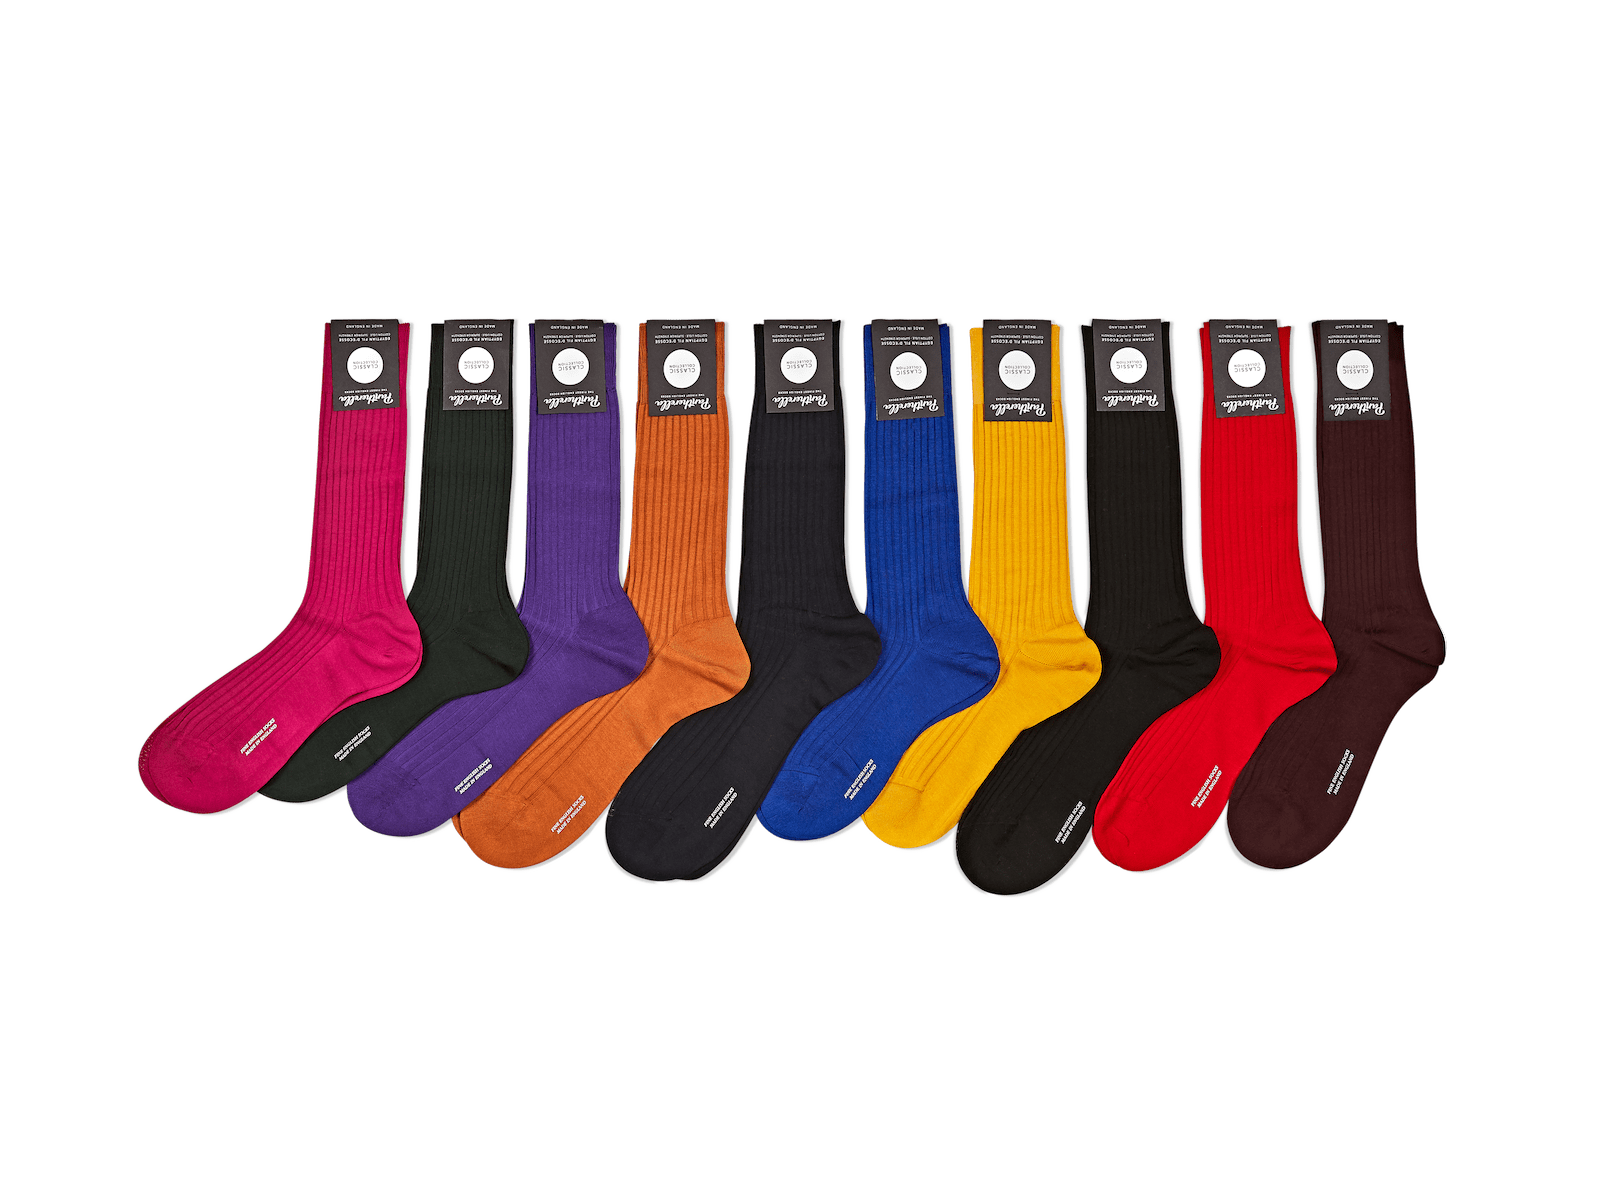 Men's Socks for Loafers, Elegant Loafer Socks